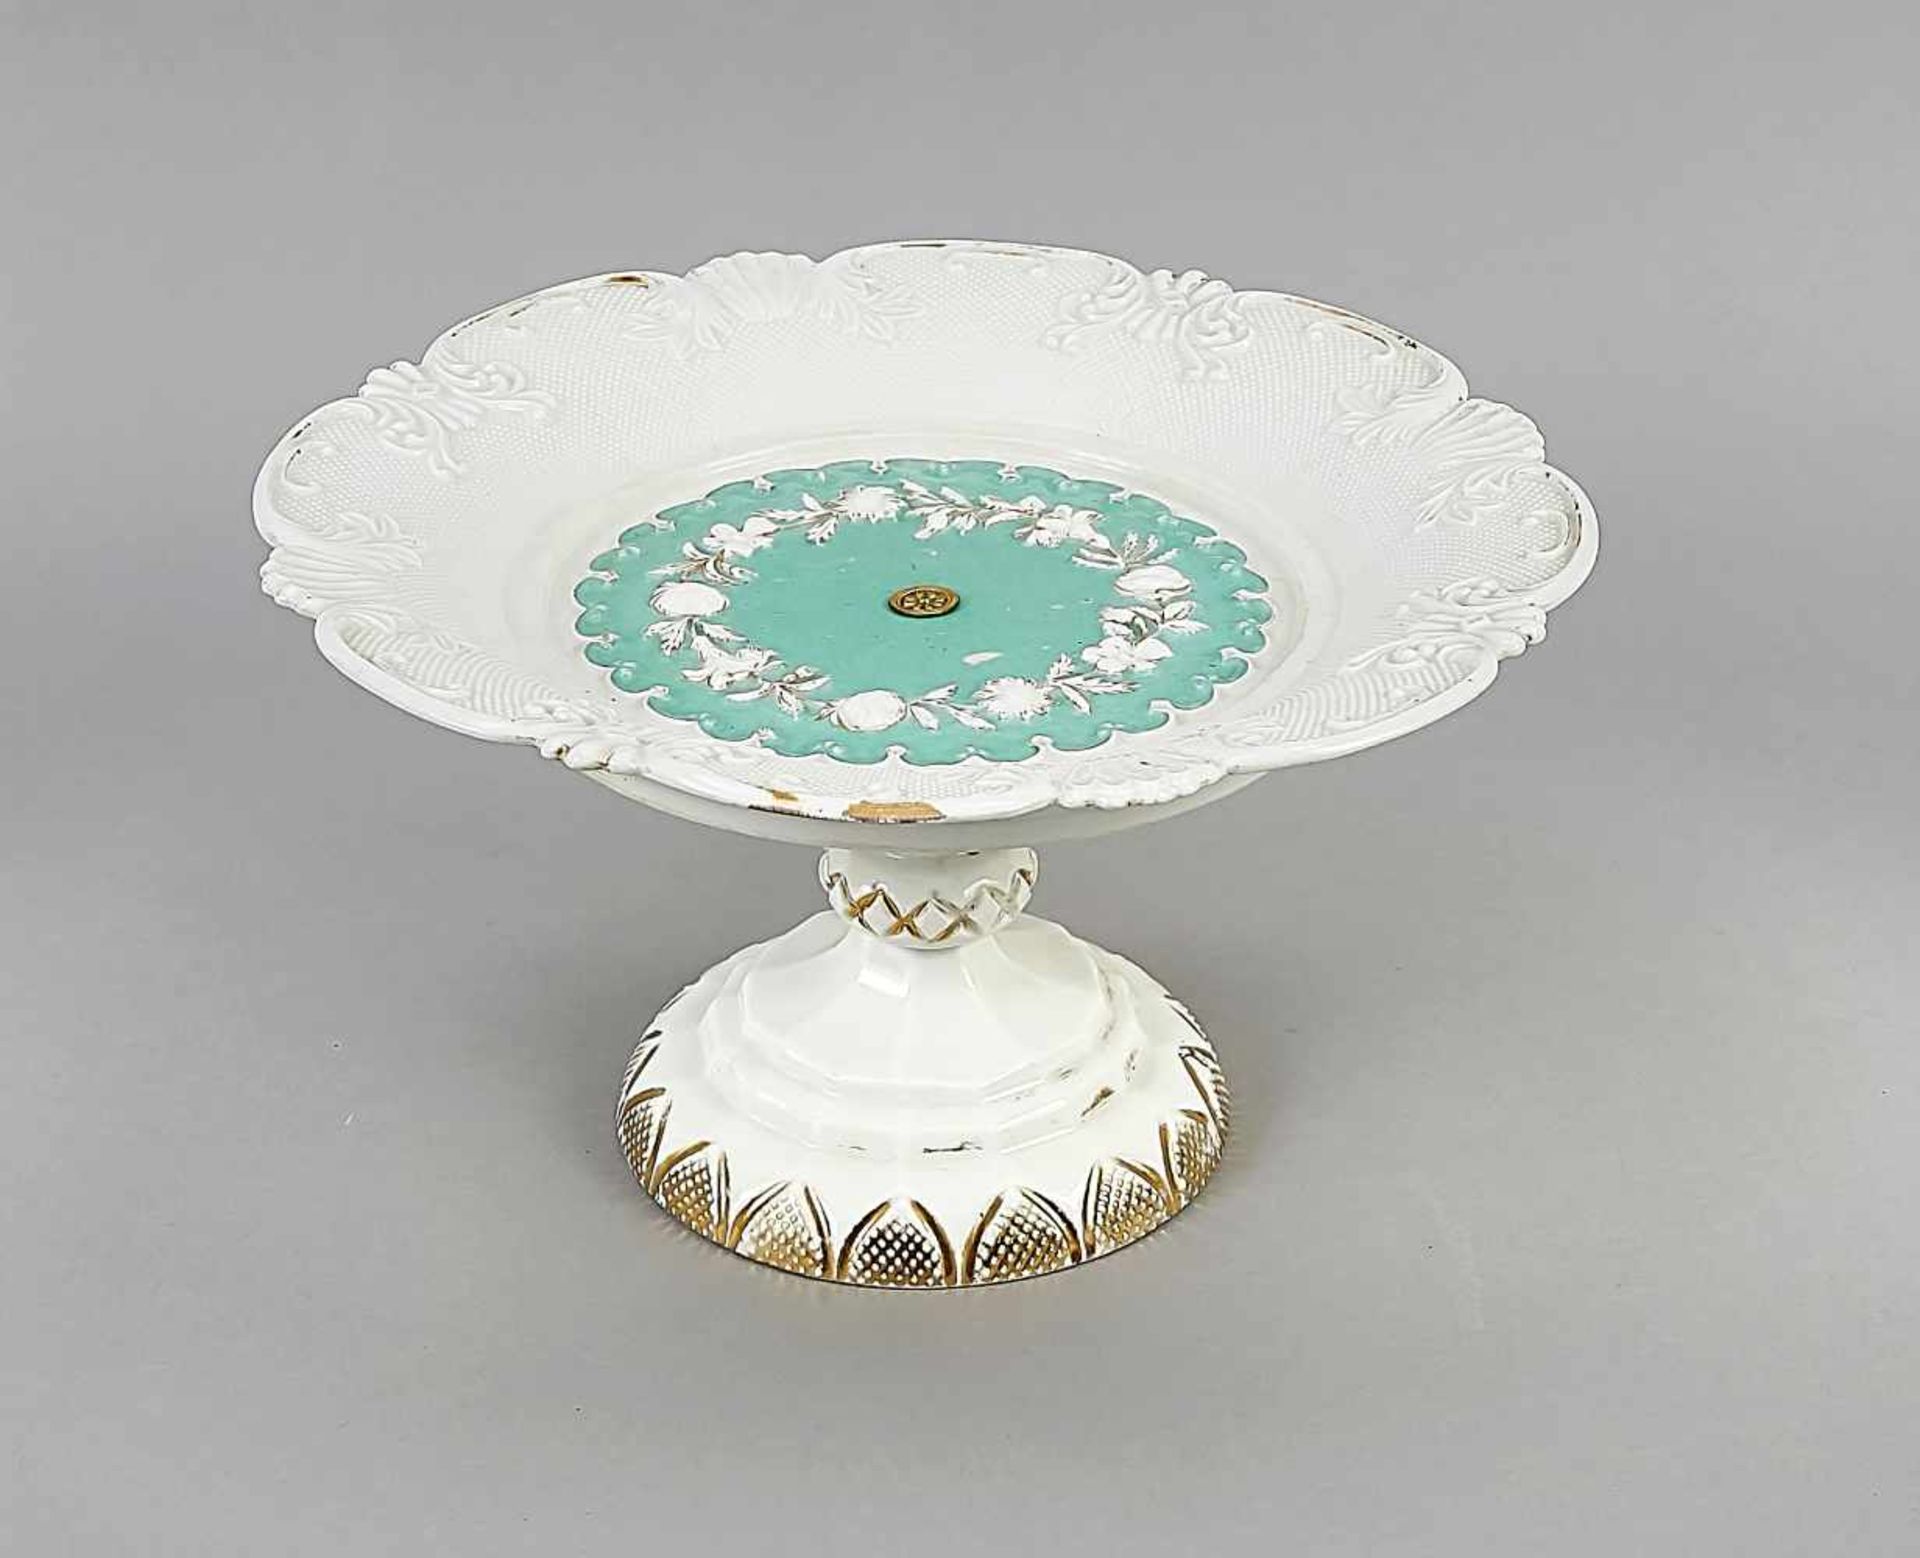 Pompous centerpiece, Meissen, mark 1817-1827, 1st quality, bowl with rich relief surface